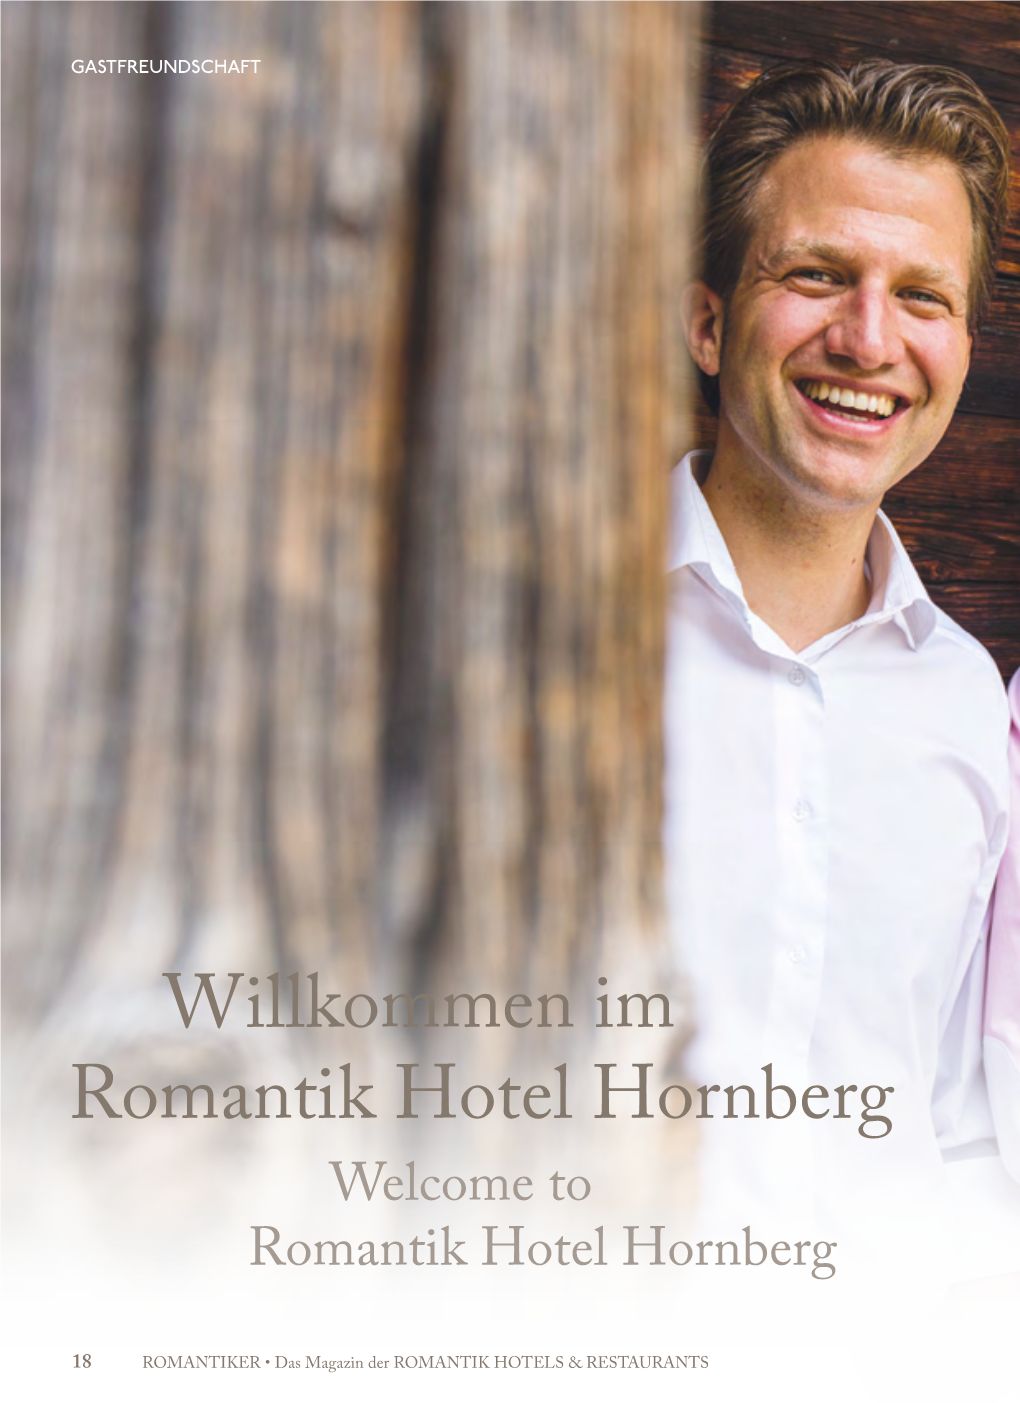 Willkommen Im Romantik Hotel Hornberg Welcome to Romantik Hotel Hornberg